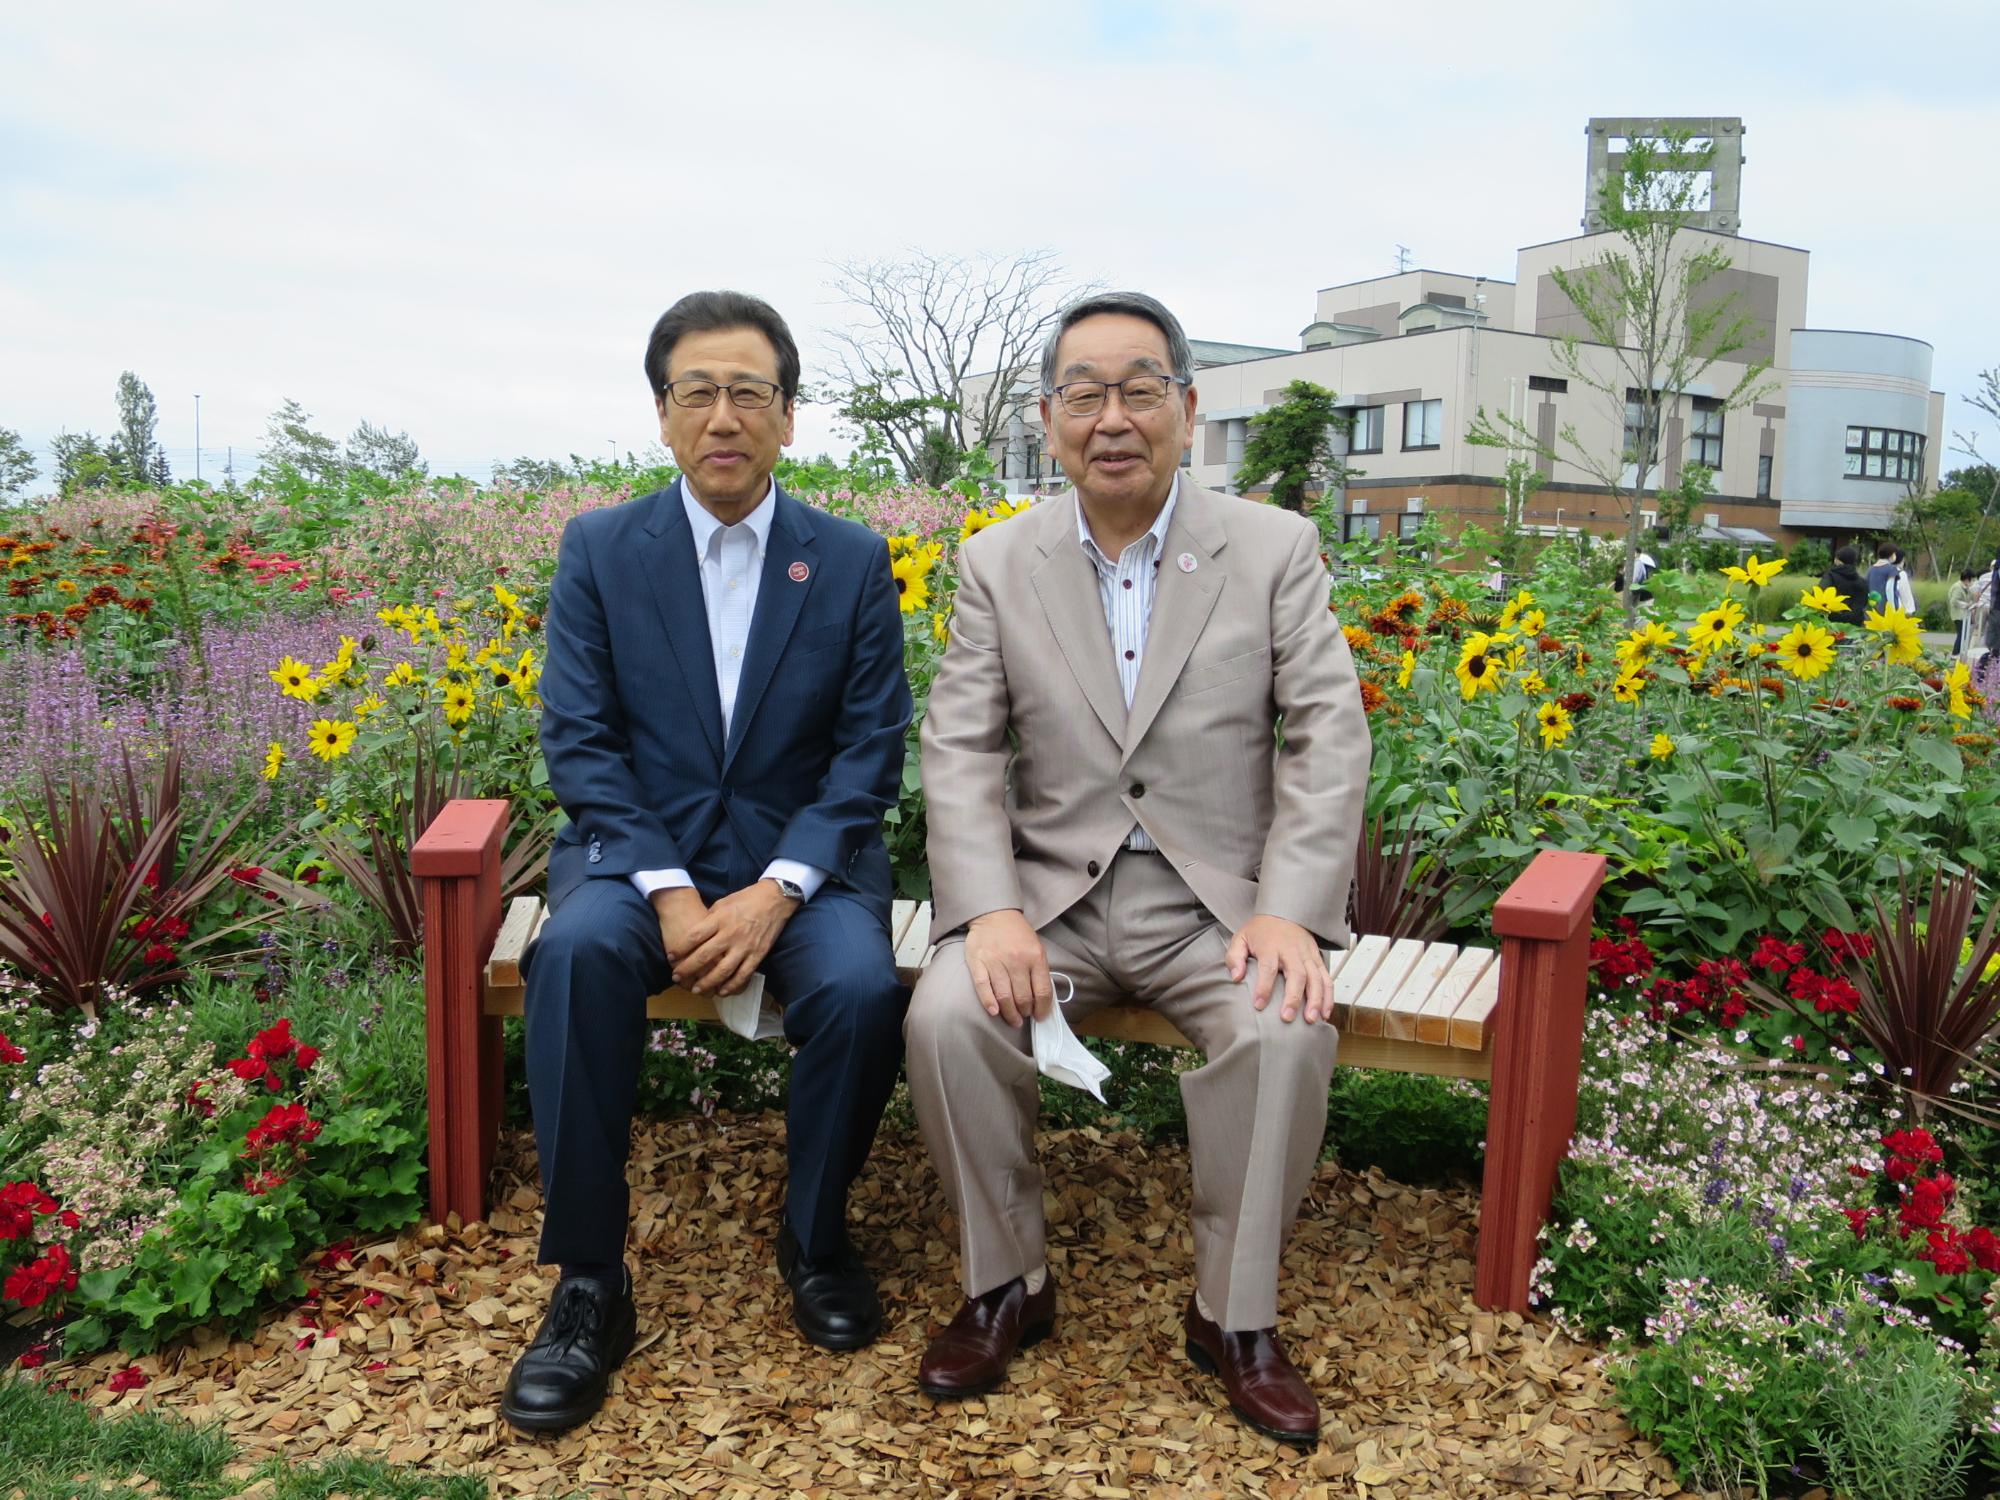 札幌市長と記念撮影する原田市長